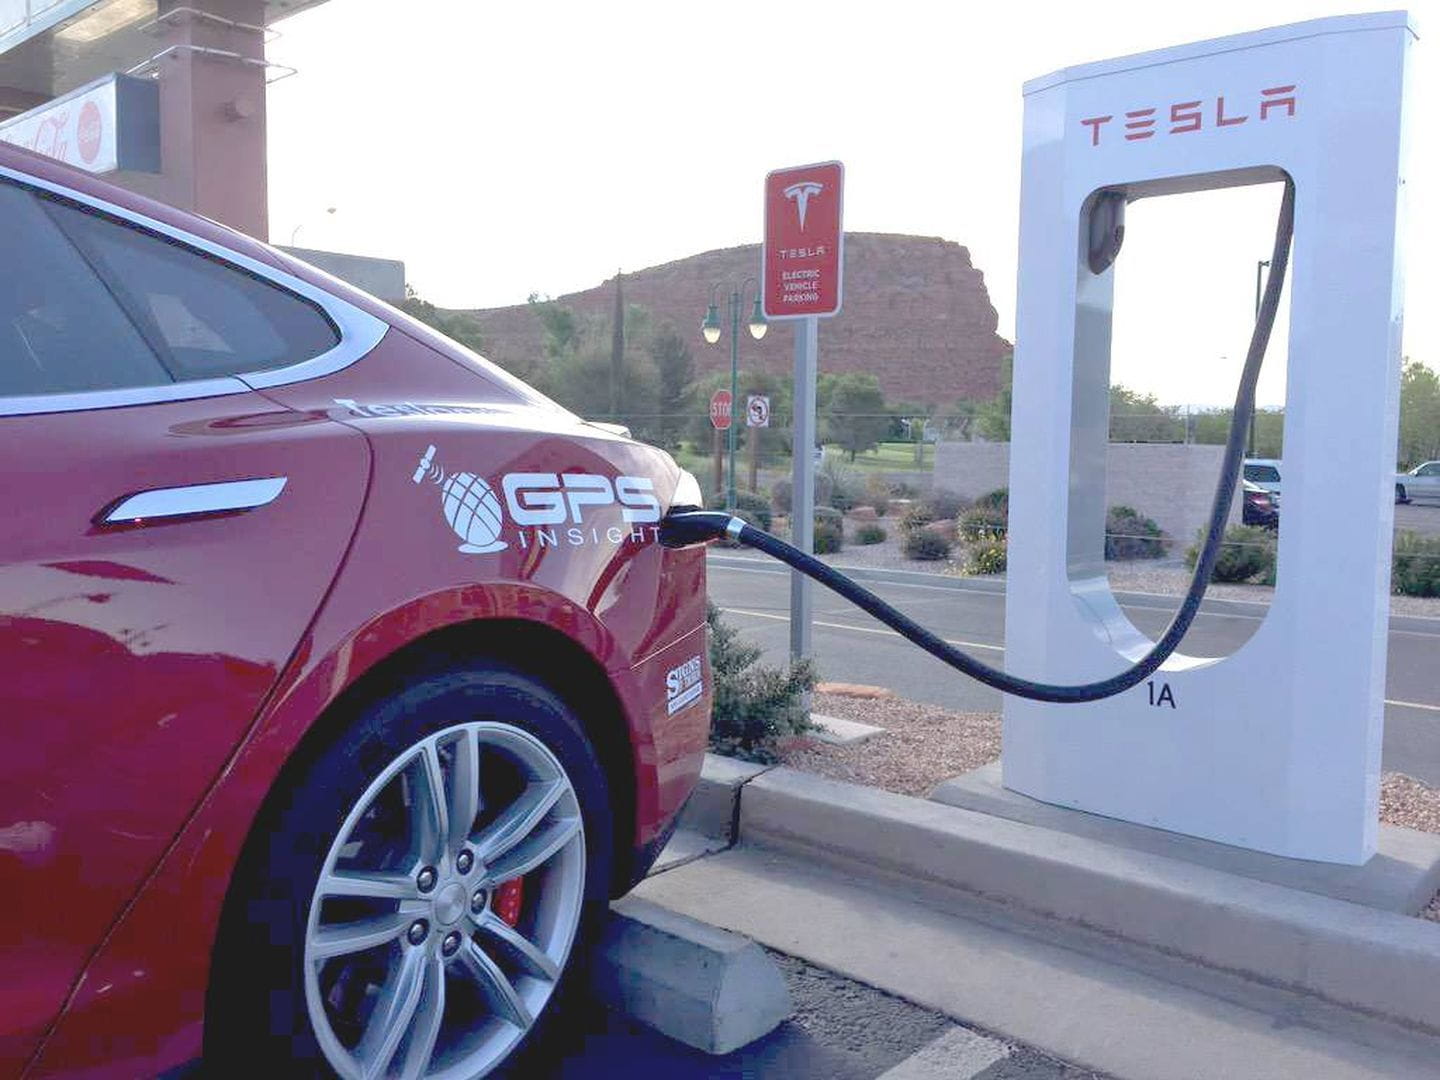  Una clásica imagen de los automóviles Tesla recargando su batería eléctrica| Foto: Diariomotor.com